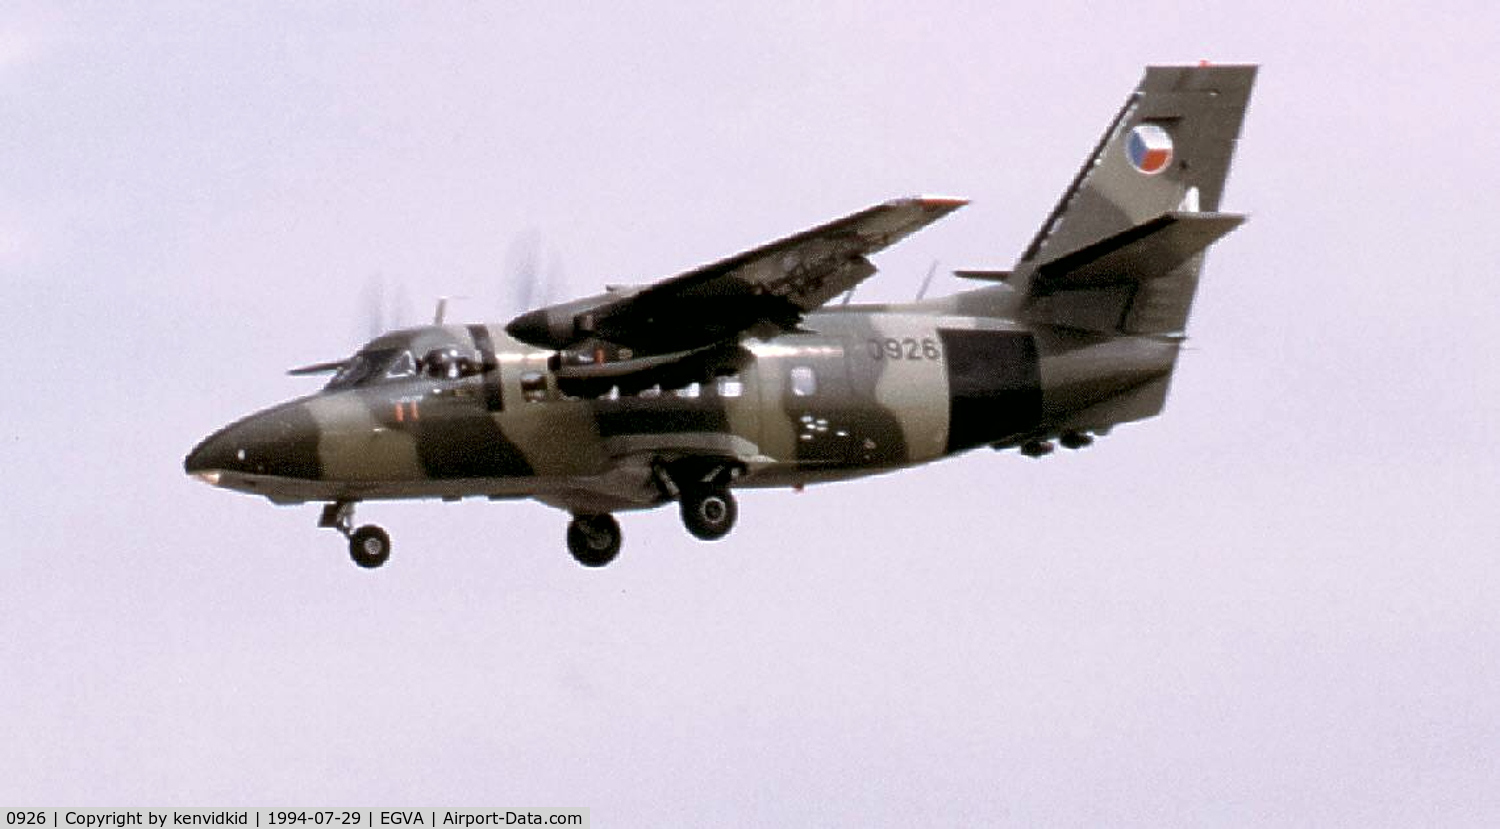 0926, 1982 Let L-410UVP Turbolet C/N 820926, Czech Republic Air Force arriving at RIAT.